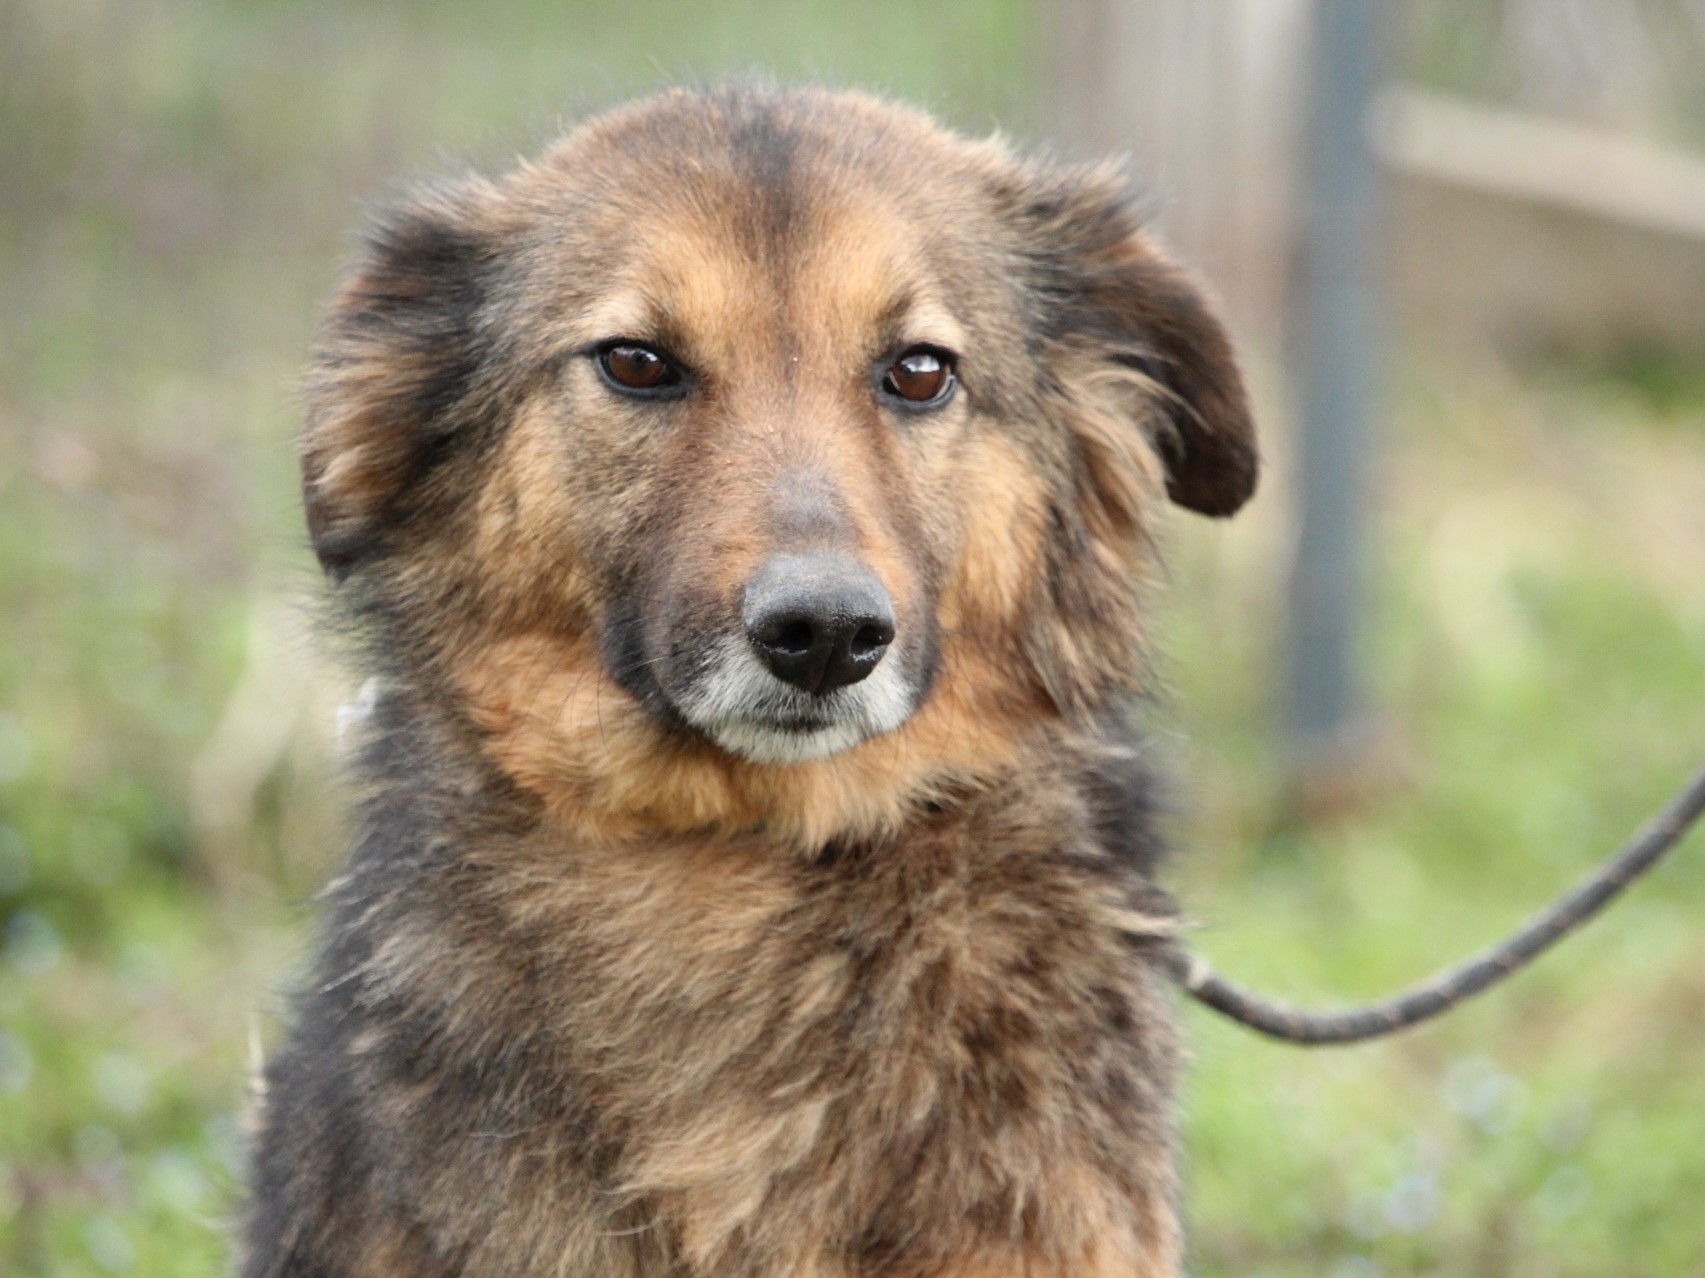 Tierschutzverein Bellas Pfotenhilfe Hunderettung Bosnien Hund adoptieren Sina